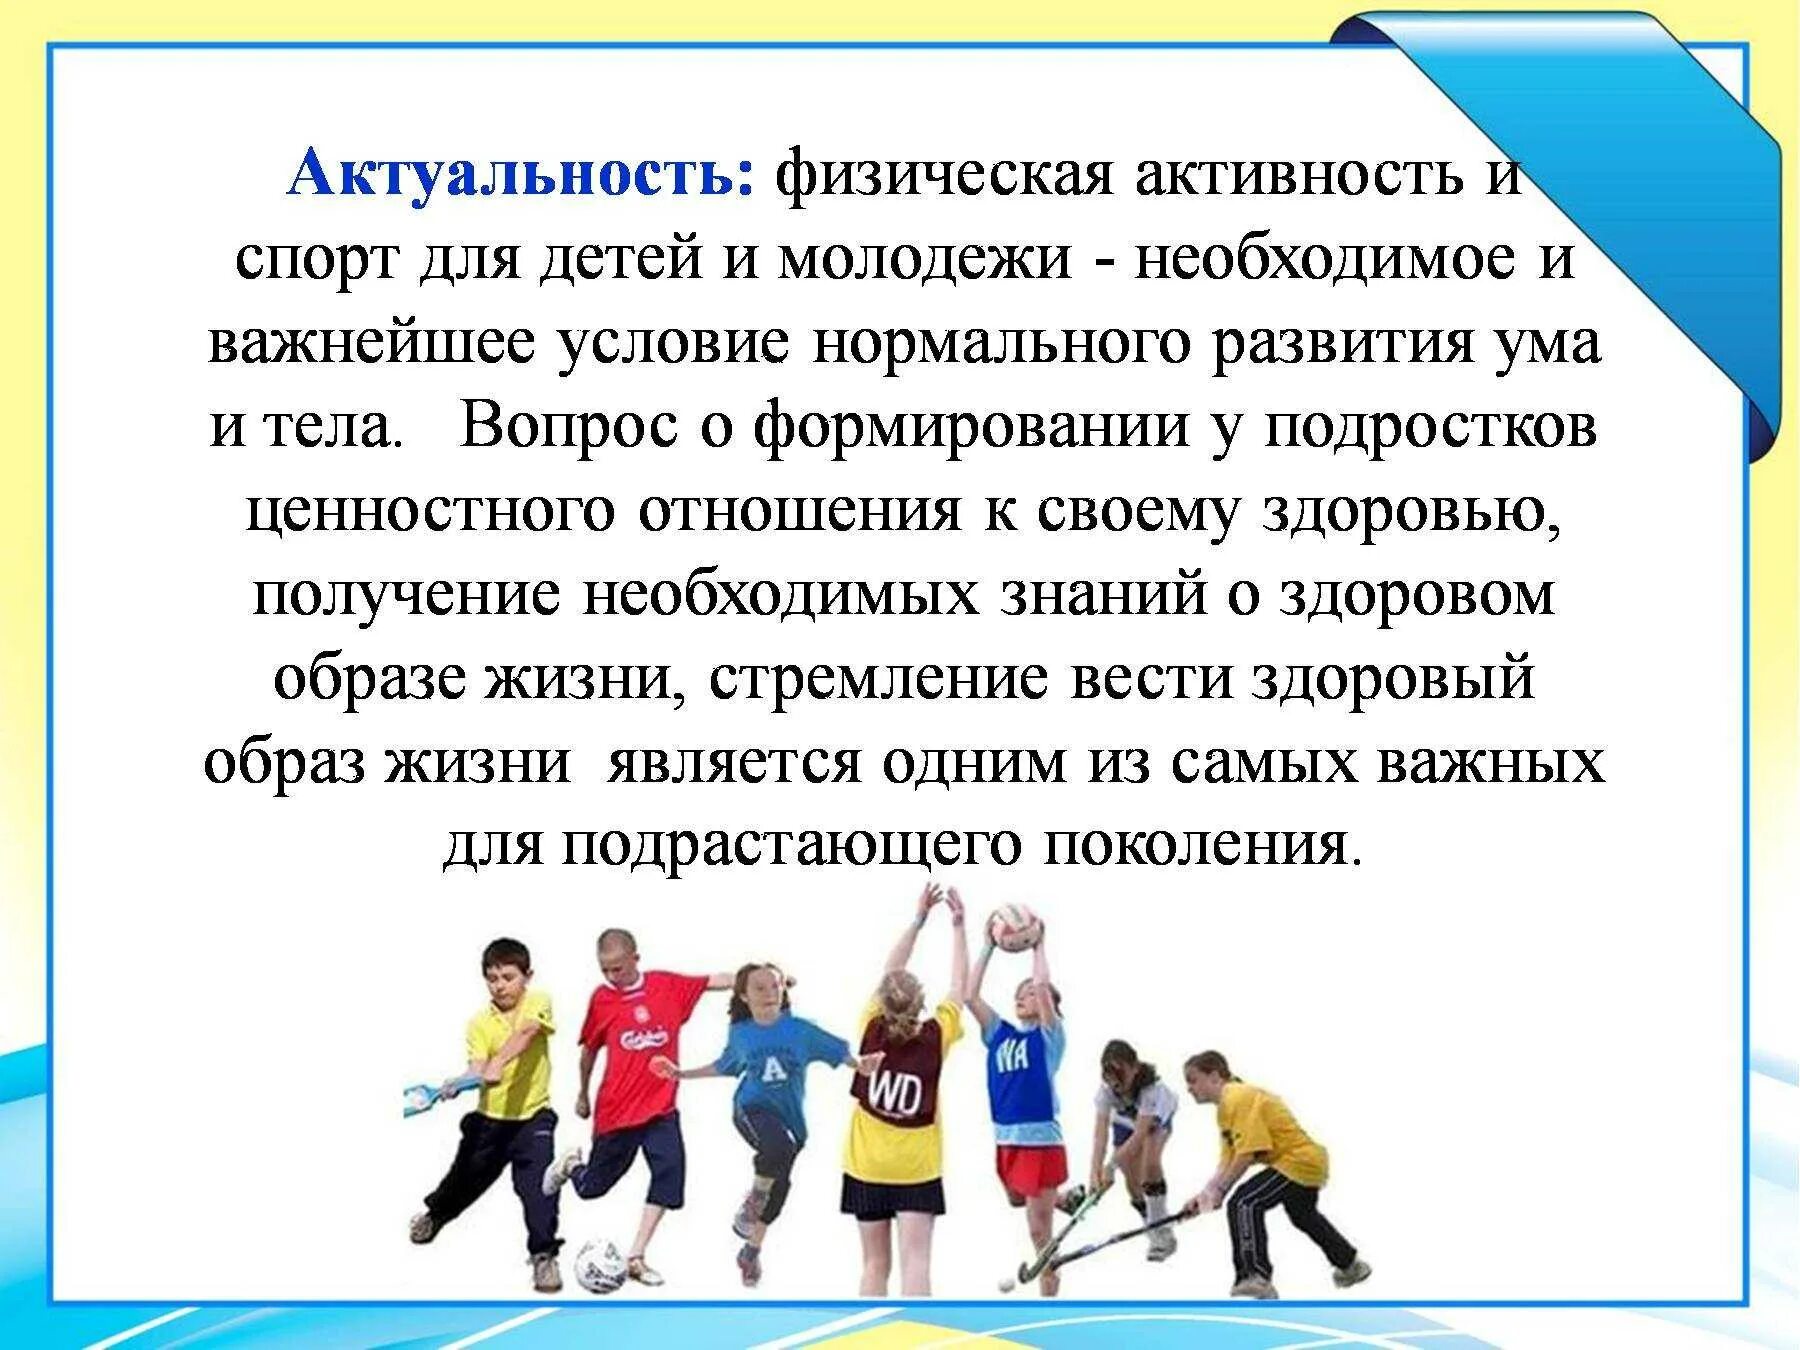 Актуальность занятия спортом. Физическая активность школьников. Влияние физической активности на организм. Двигательная активность школьников.